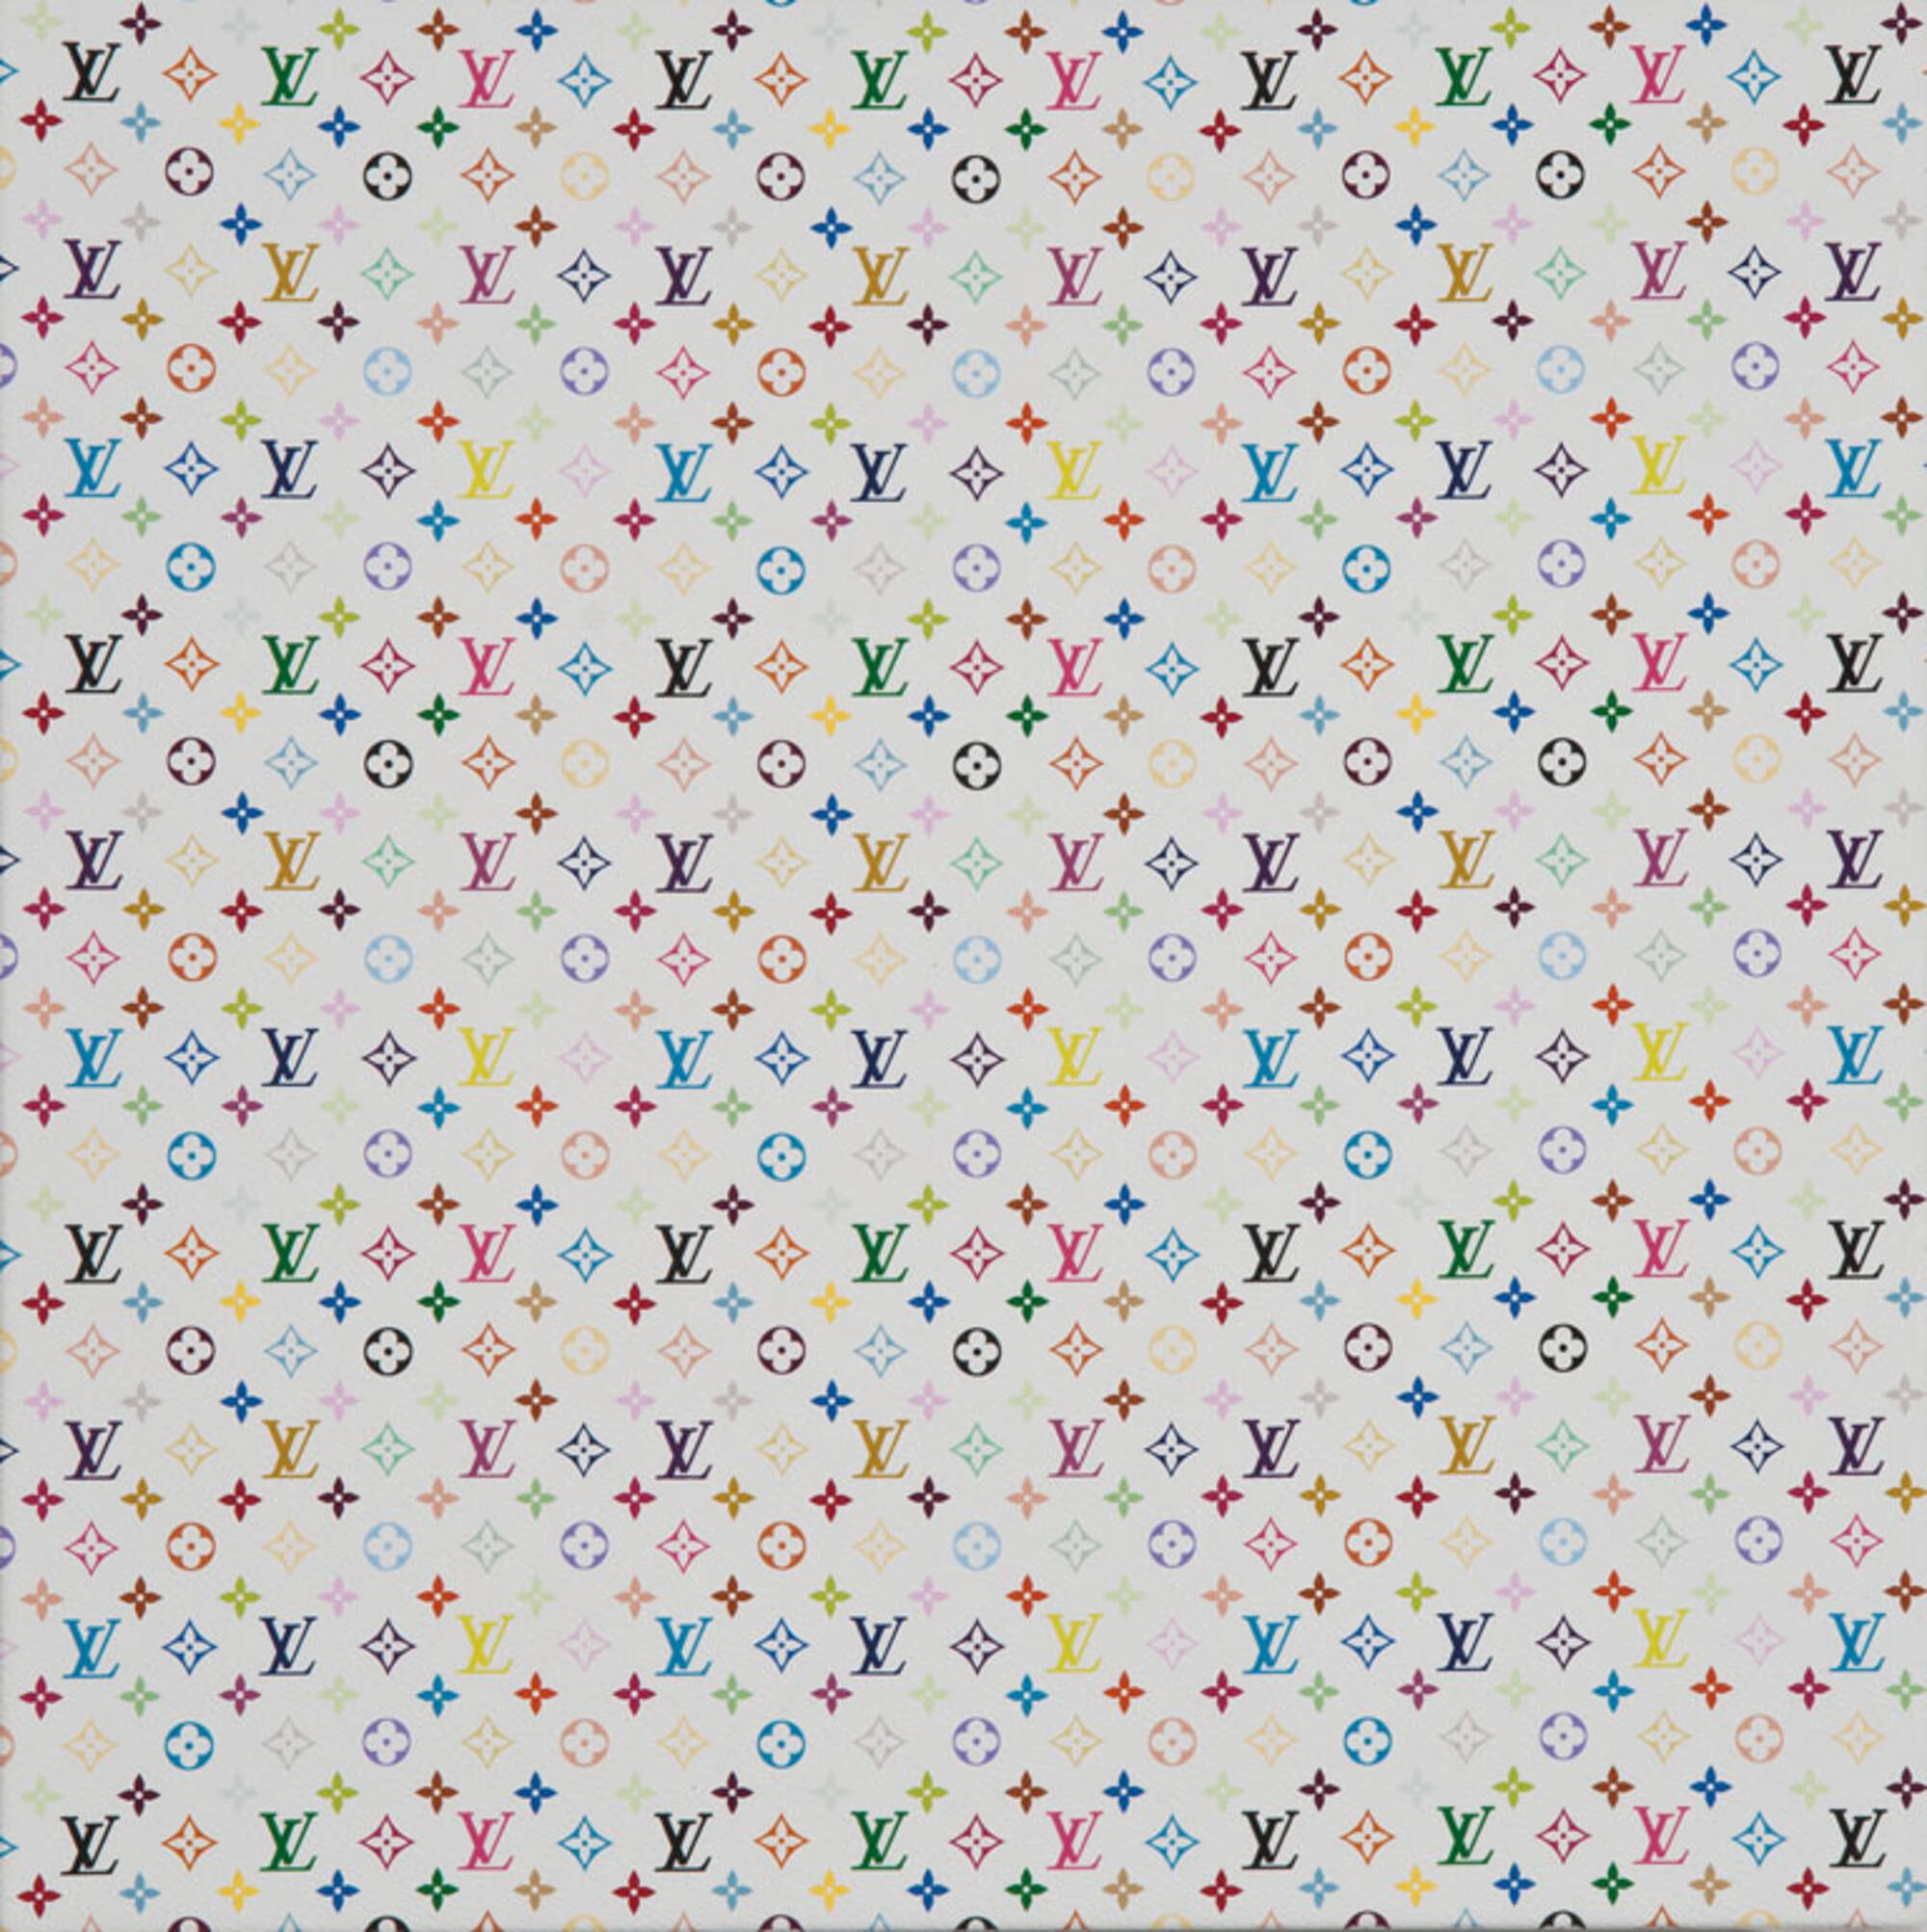 387: TAKASHI MURAKAMI, Monogram Mini Multicolore - white < Modern Art &  Design, 6 May 2012 < Auctions